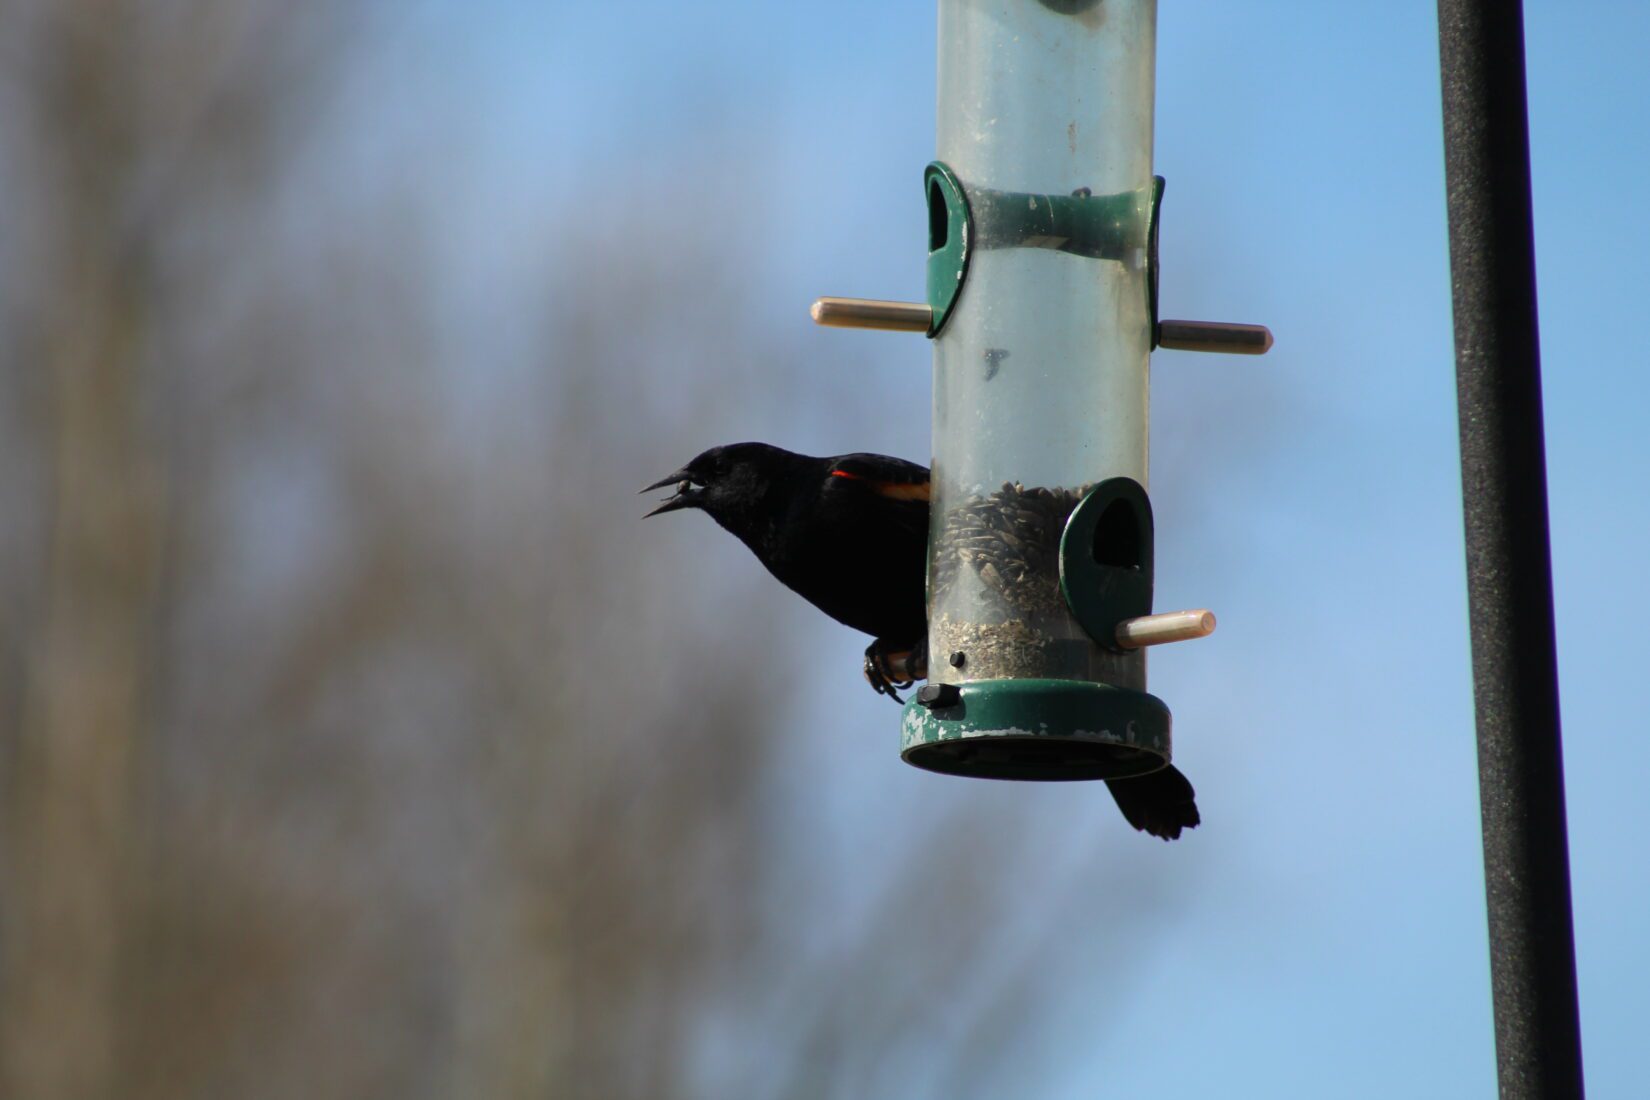 Red-winged blackbird at a bird feeder